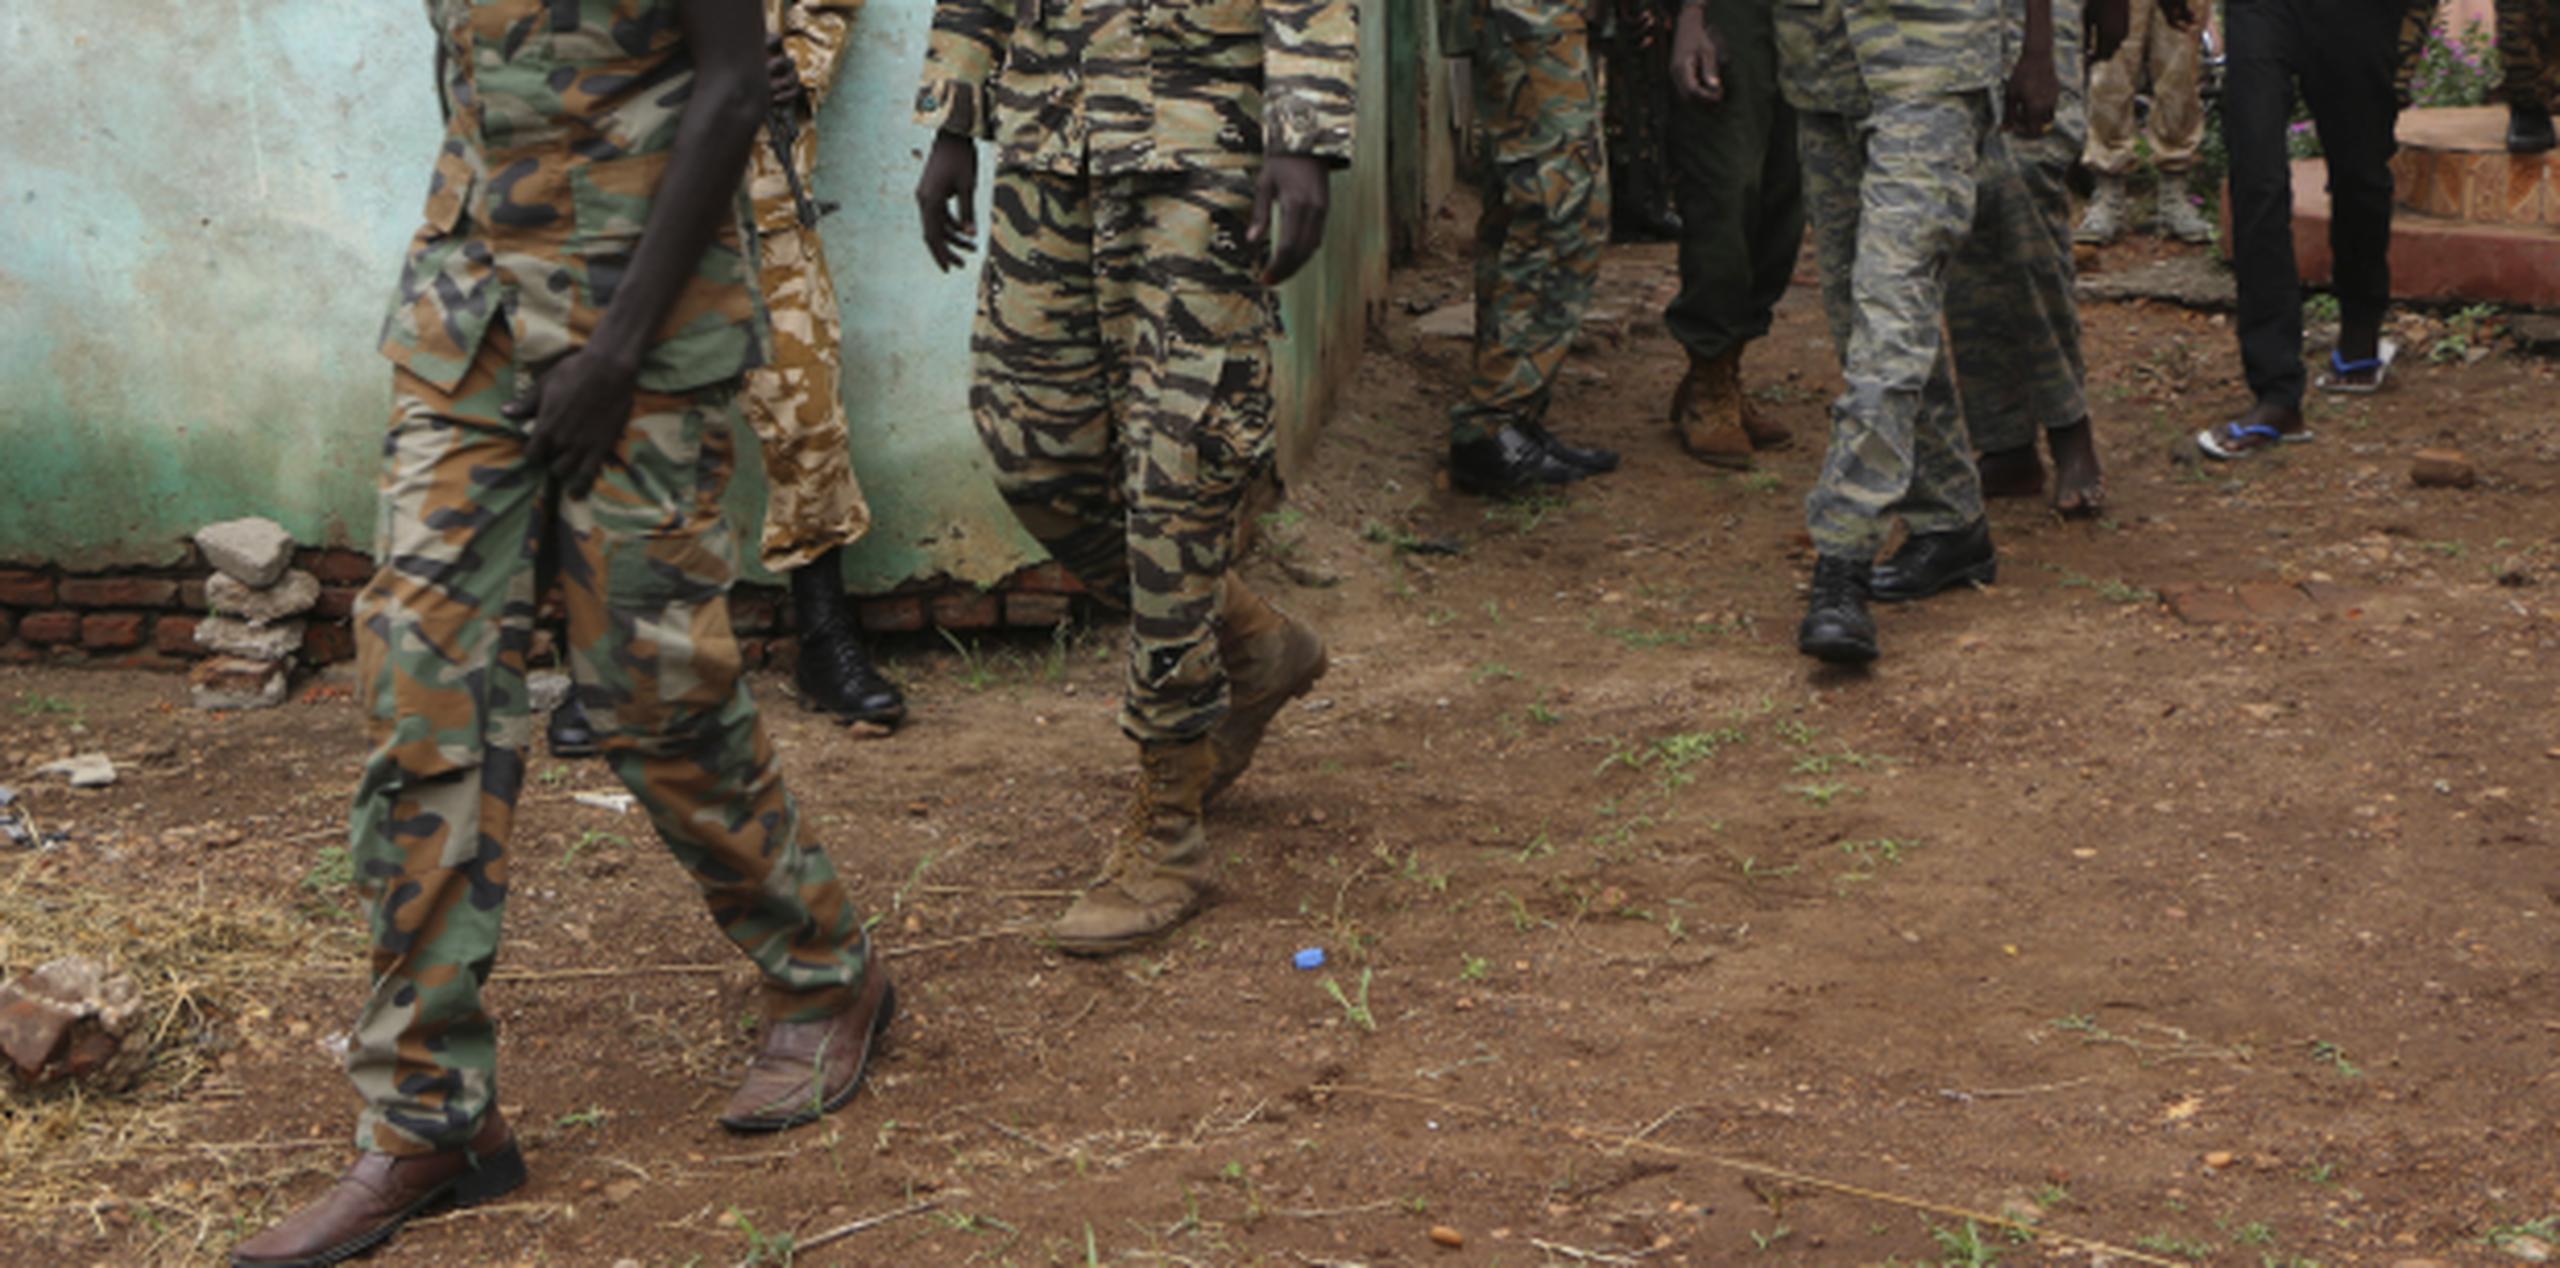 Las conclusiones, con "suficientes pruebas” para cargos criminales tanto contra las fuerzas del gobierno del presidente Salva Kiir como contra los rebeldes. (AP)

